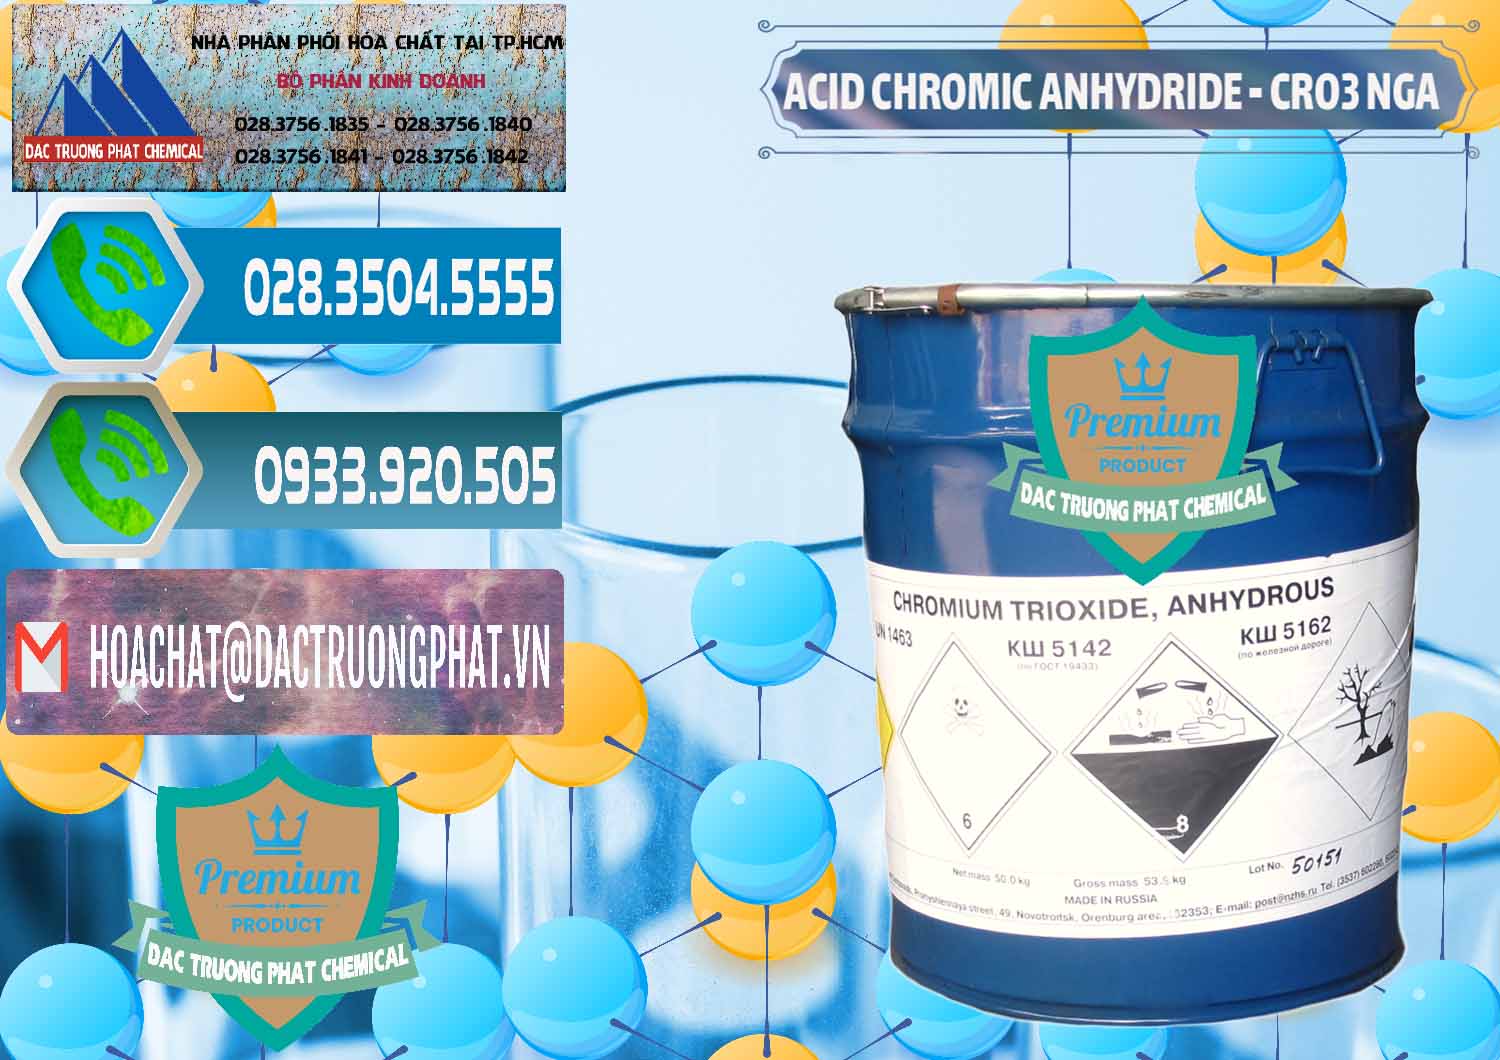 Nơi kinh doanh và bán Acid Chromic Anhydride - Cromic CRO3 Nga Russia - 0006 - Chuyên phân phối & cung ứng hóa chất tại TP.HCM - congtyhoachat.net